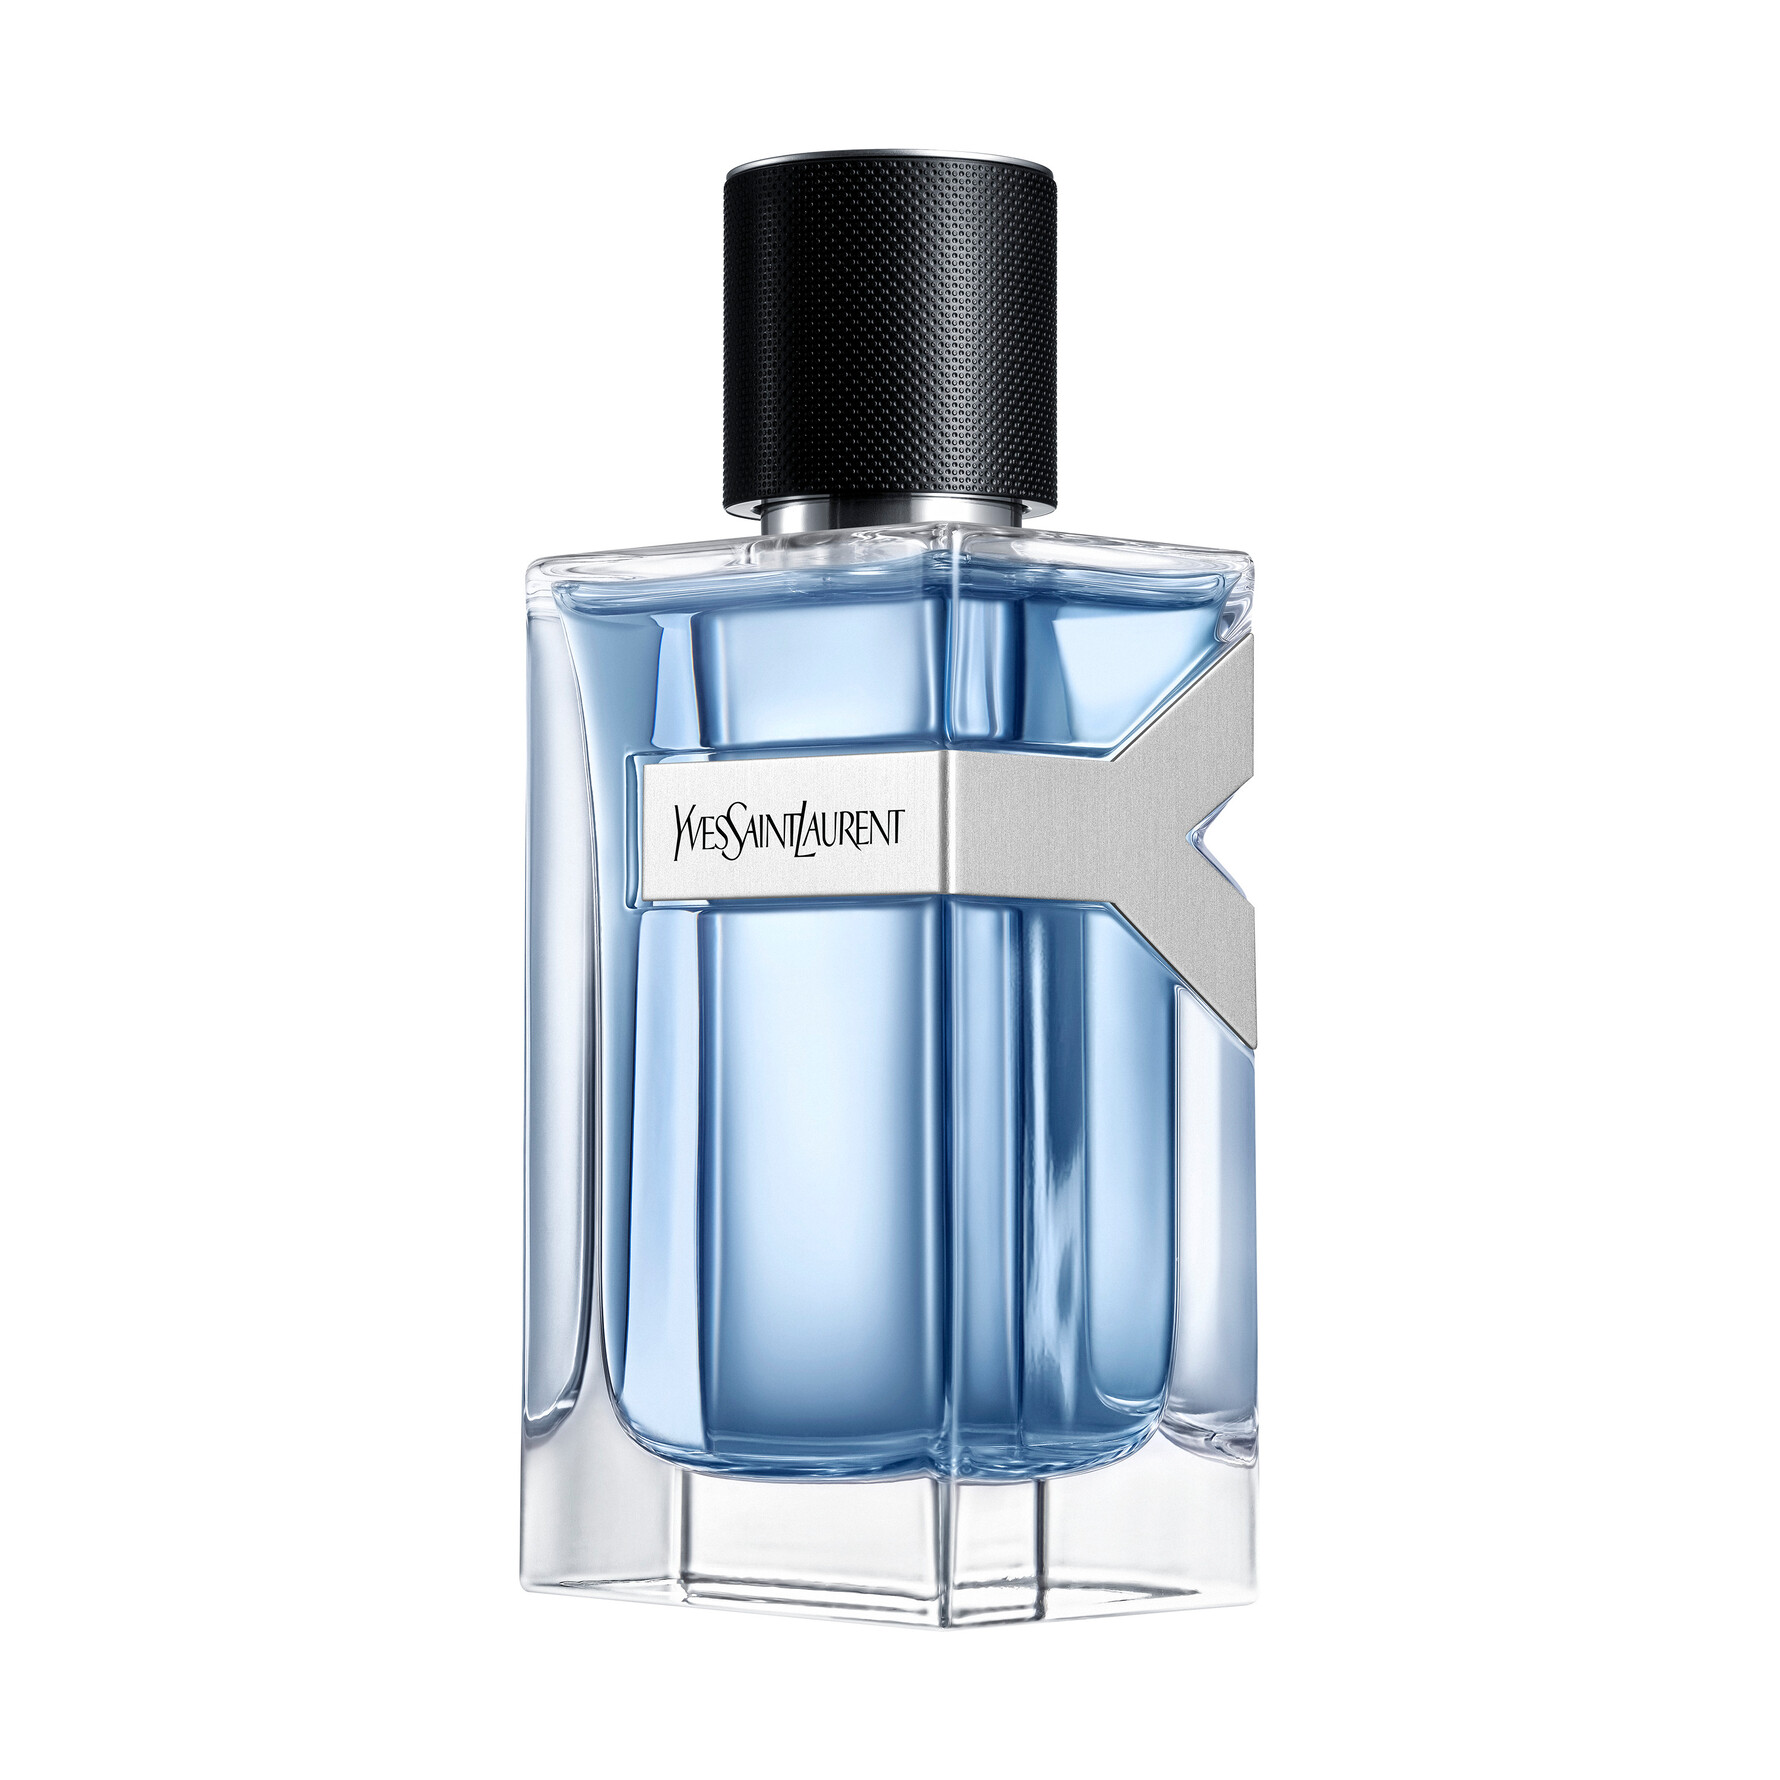 kalorie opdragelse synge Yves Saint Laurent - Køb parfume, makeup & hudpleje fra YSL